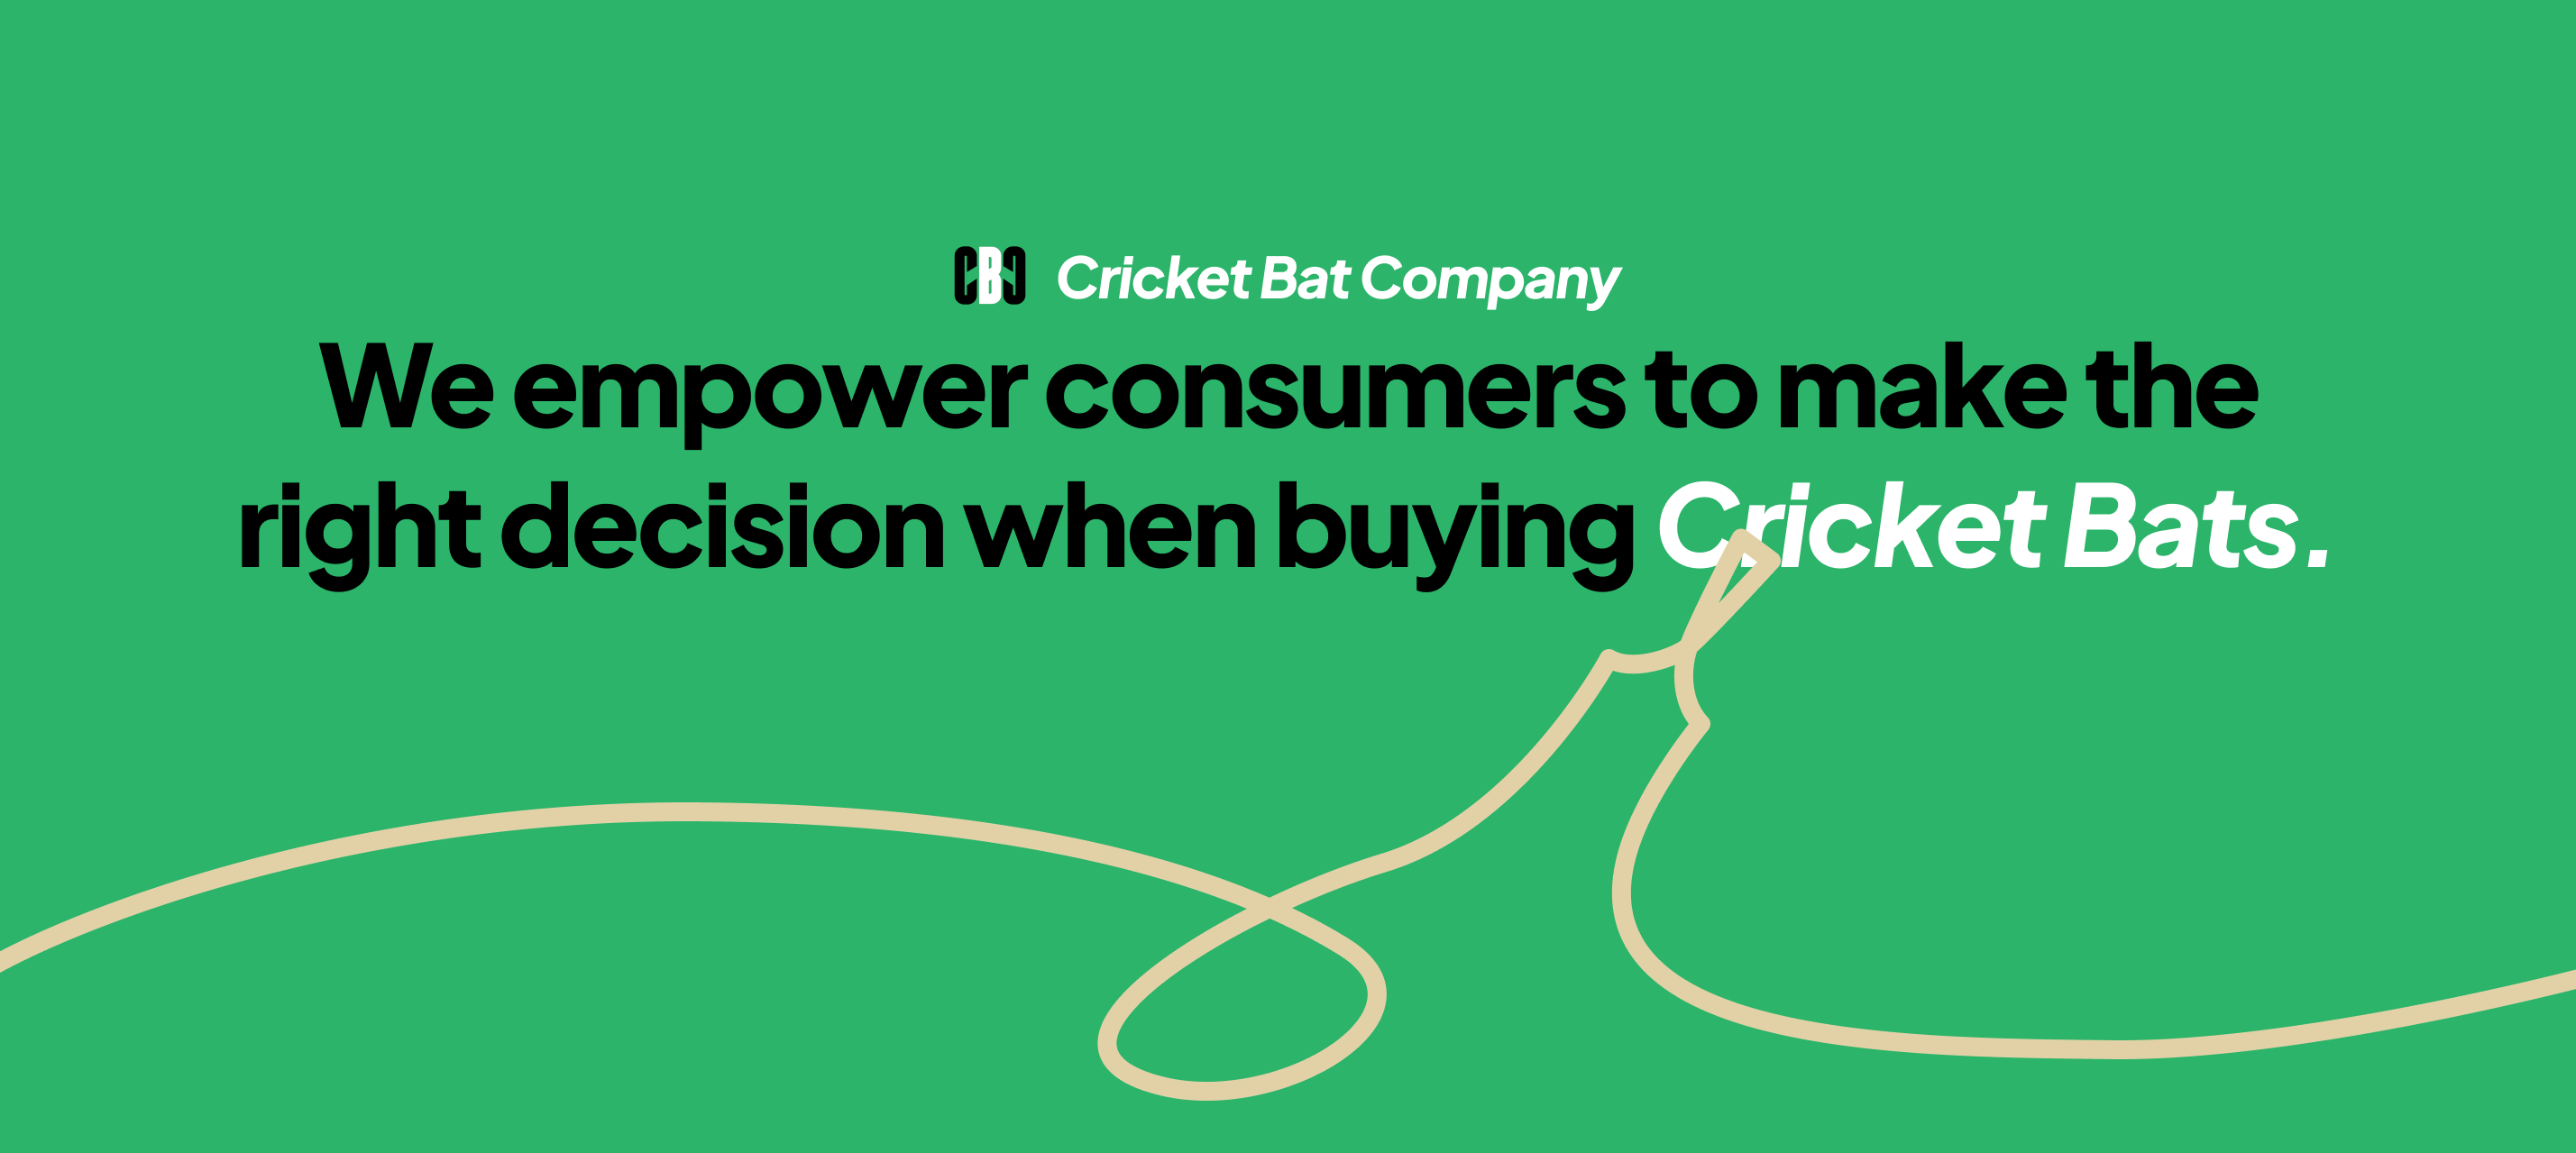 Cricket Bat Company